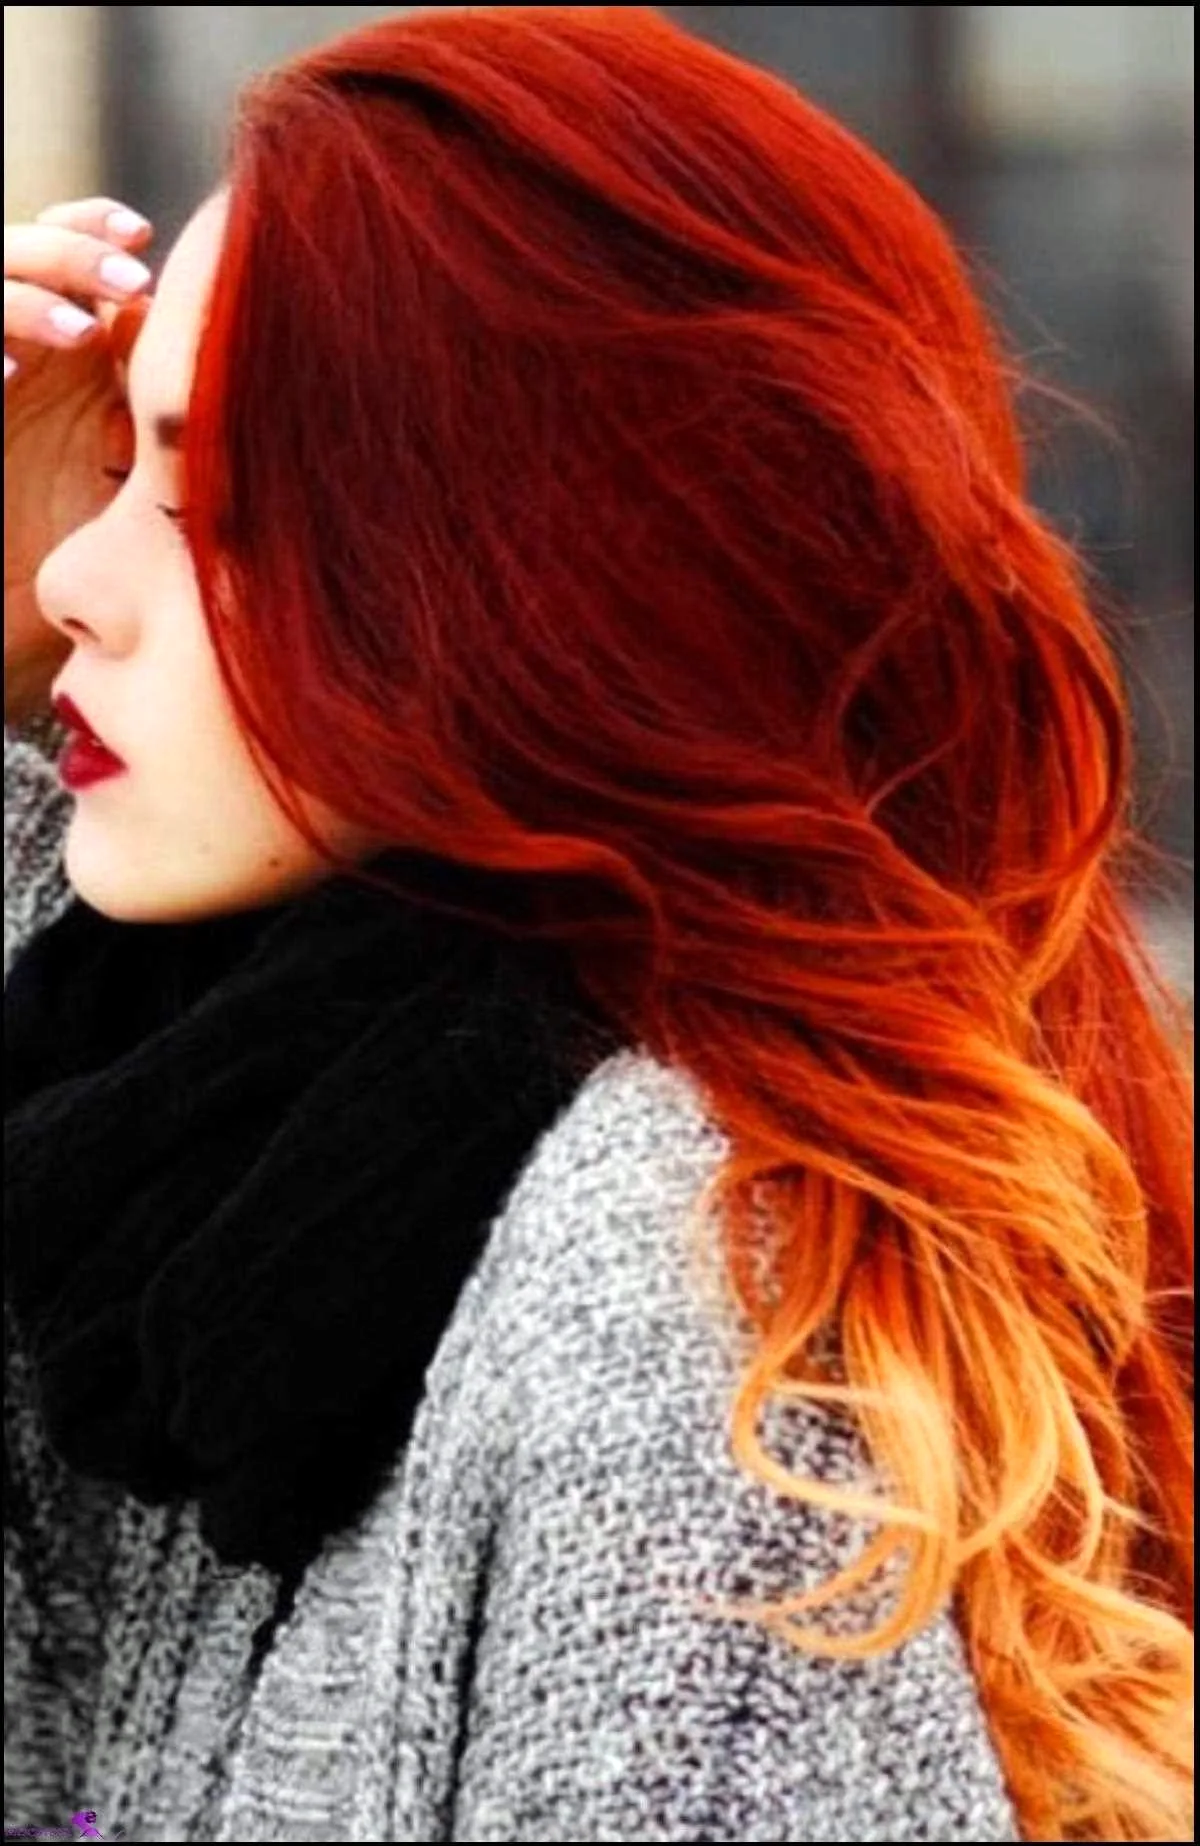 Омбре на рыжие волосы